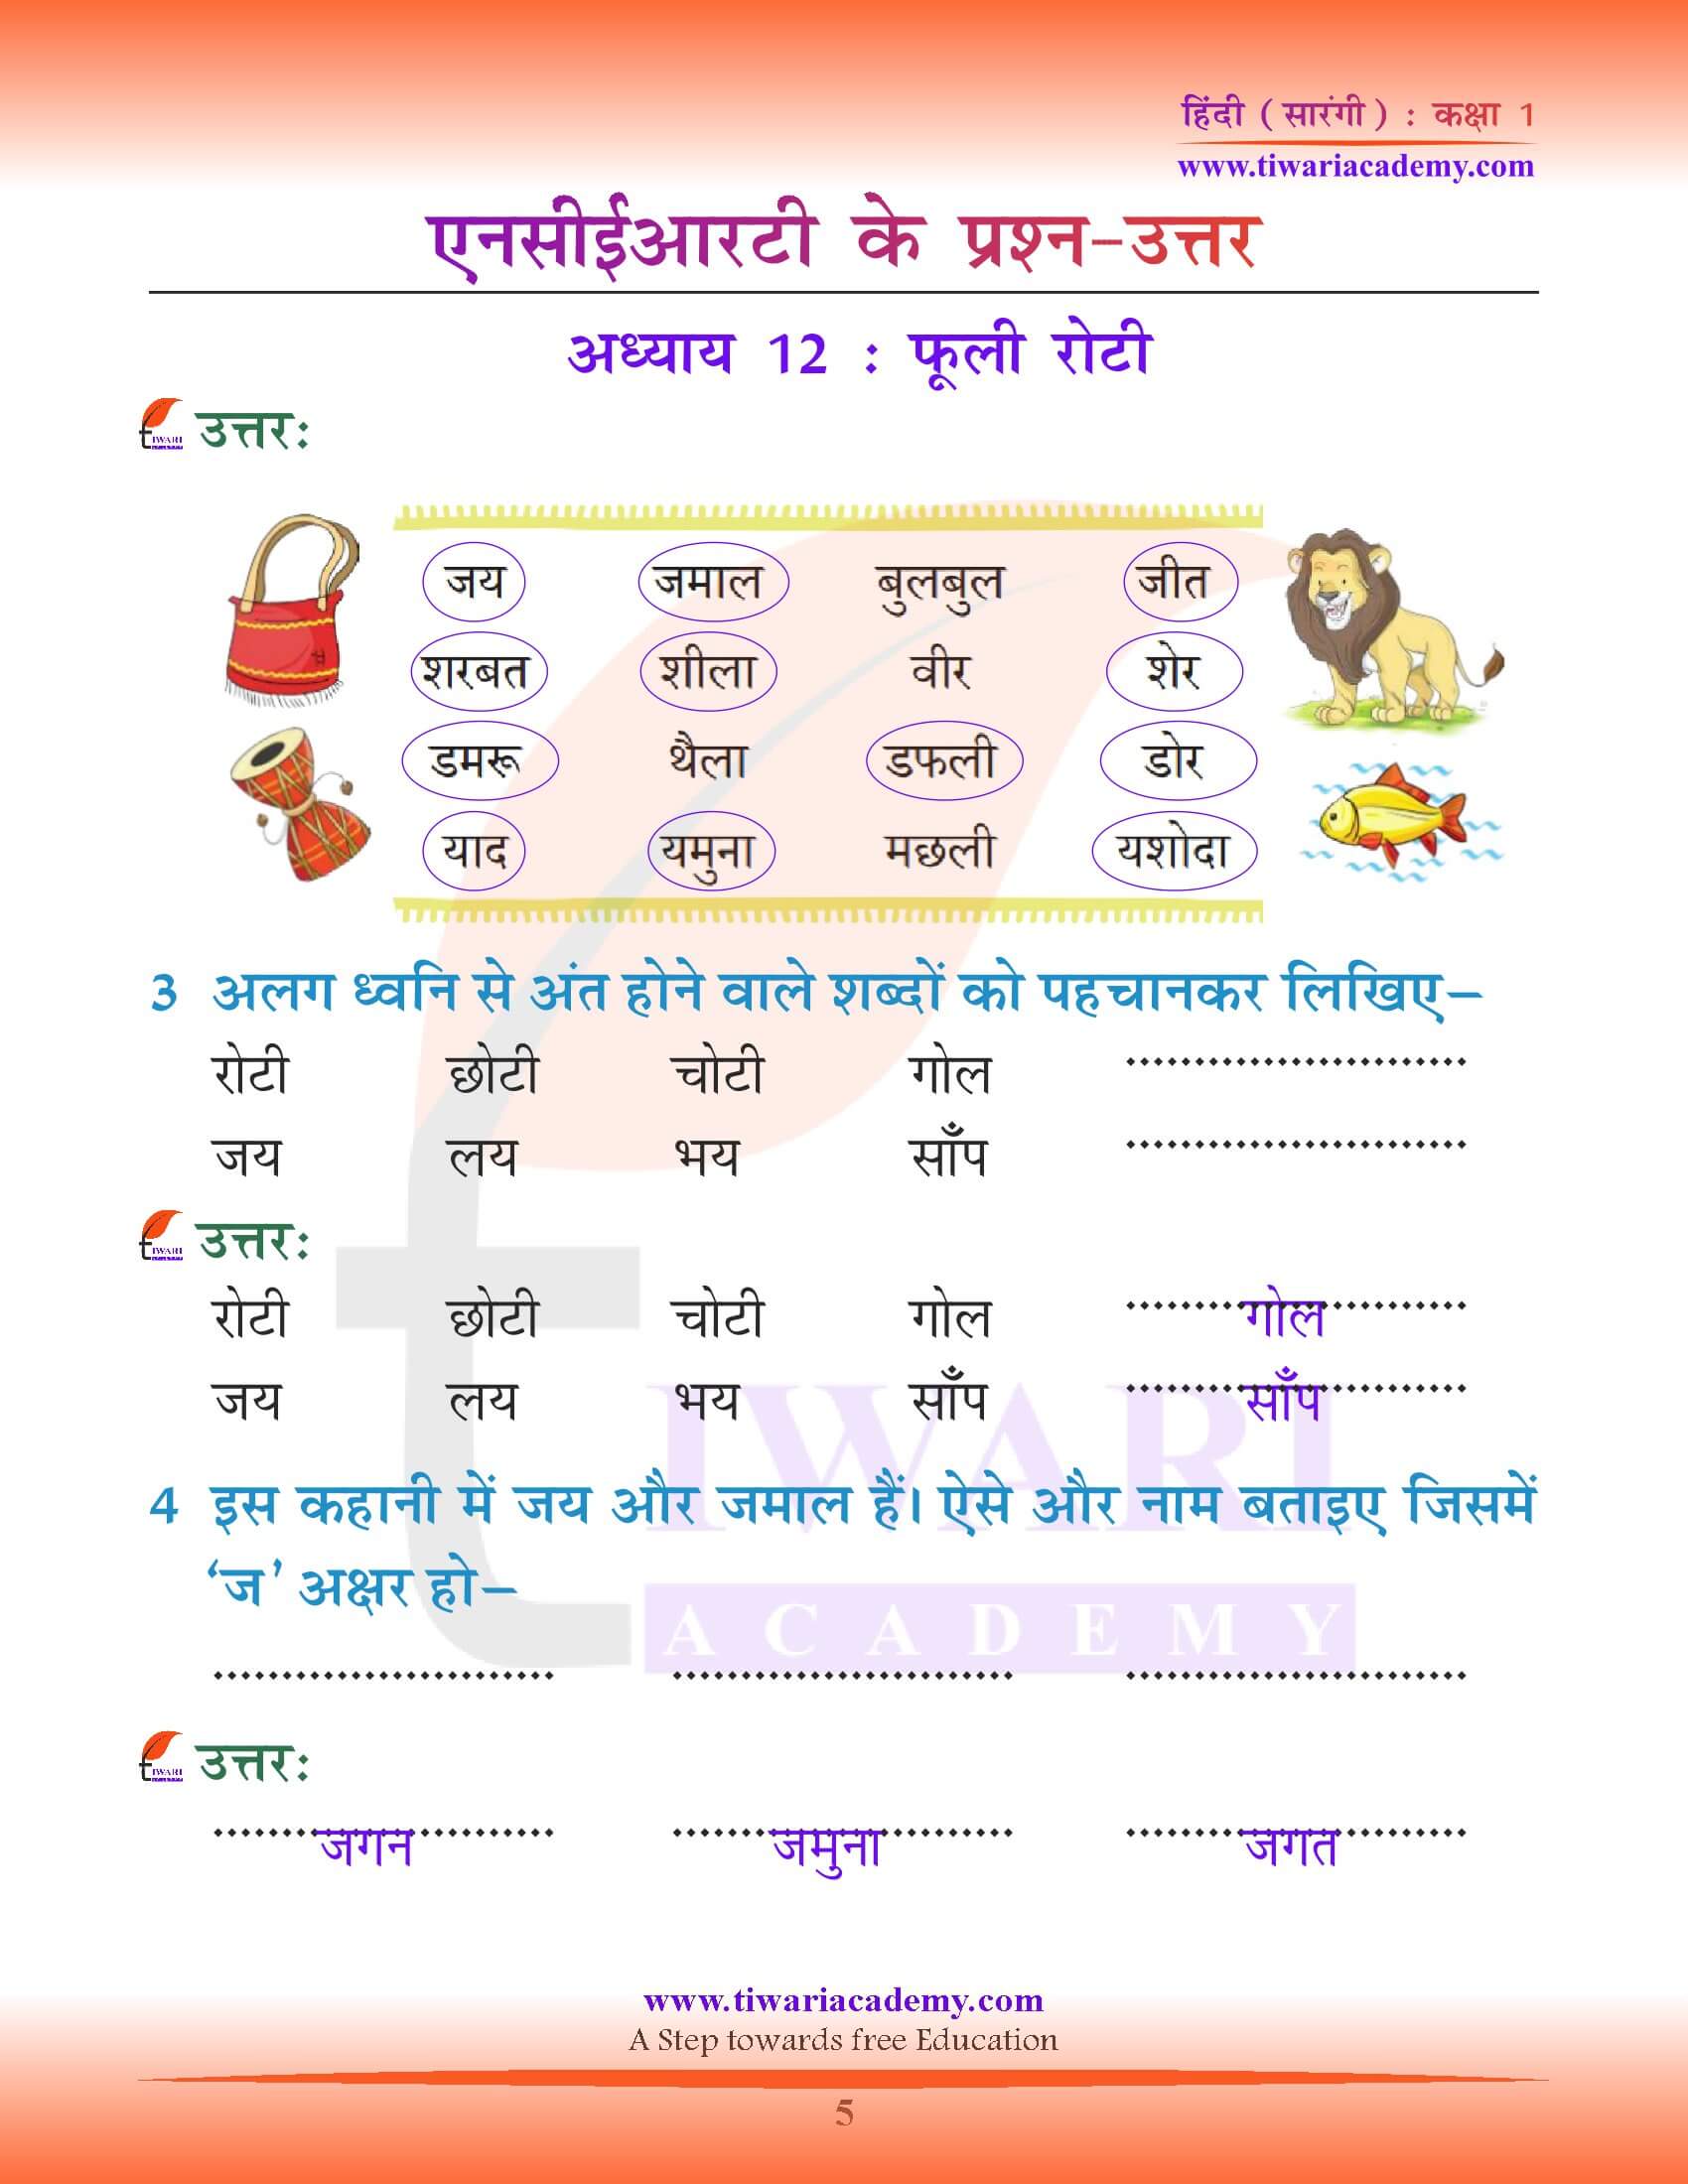 कक्षा 1 हिंदी सारंगी पाठ 12 के प्रश्न उत्तर